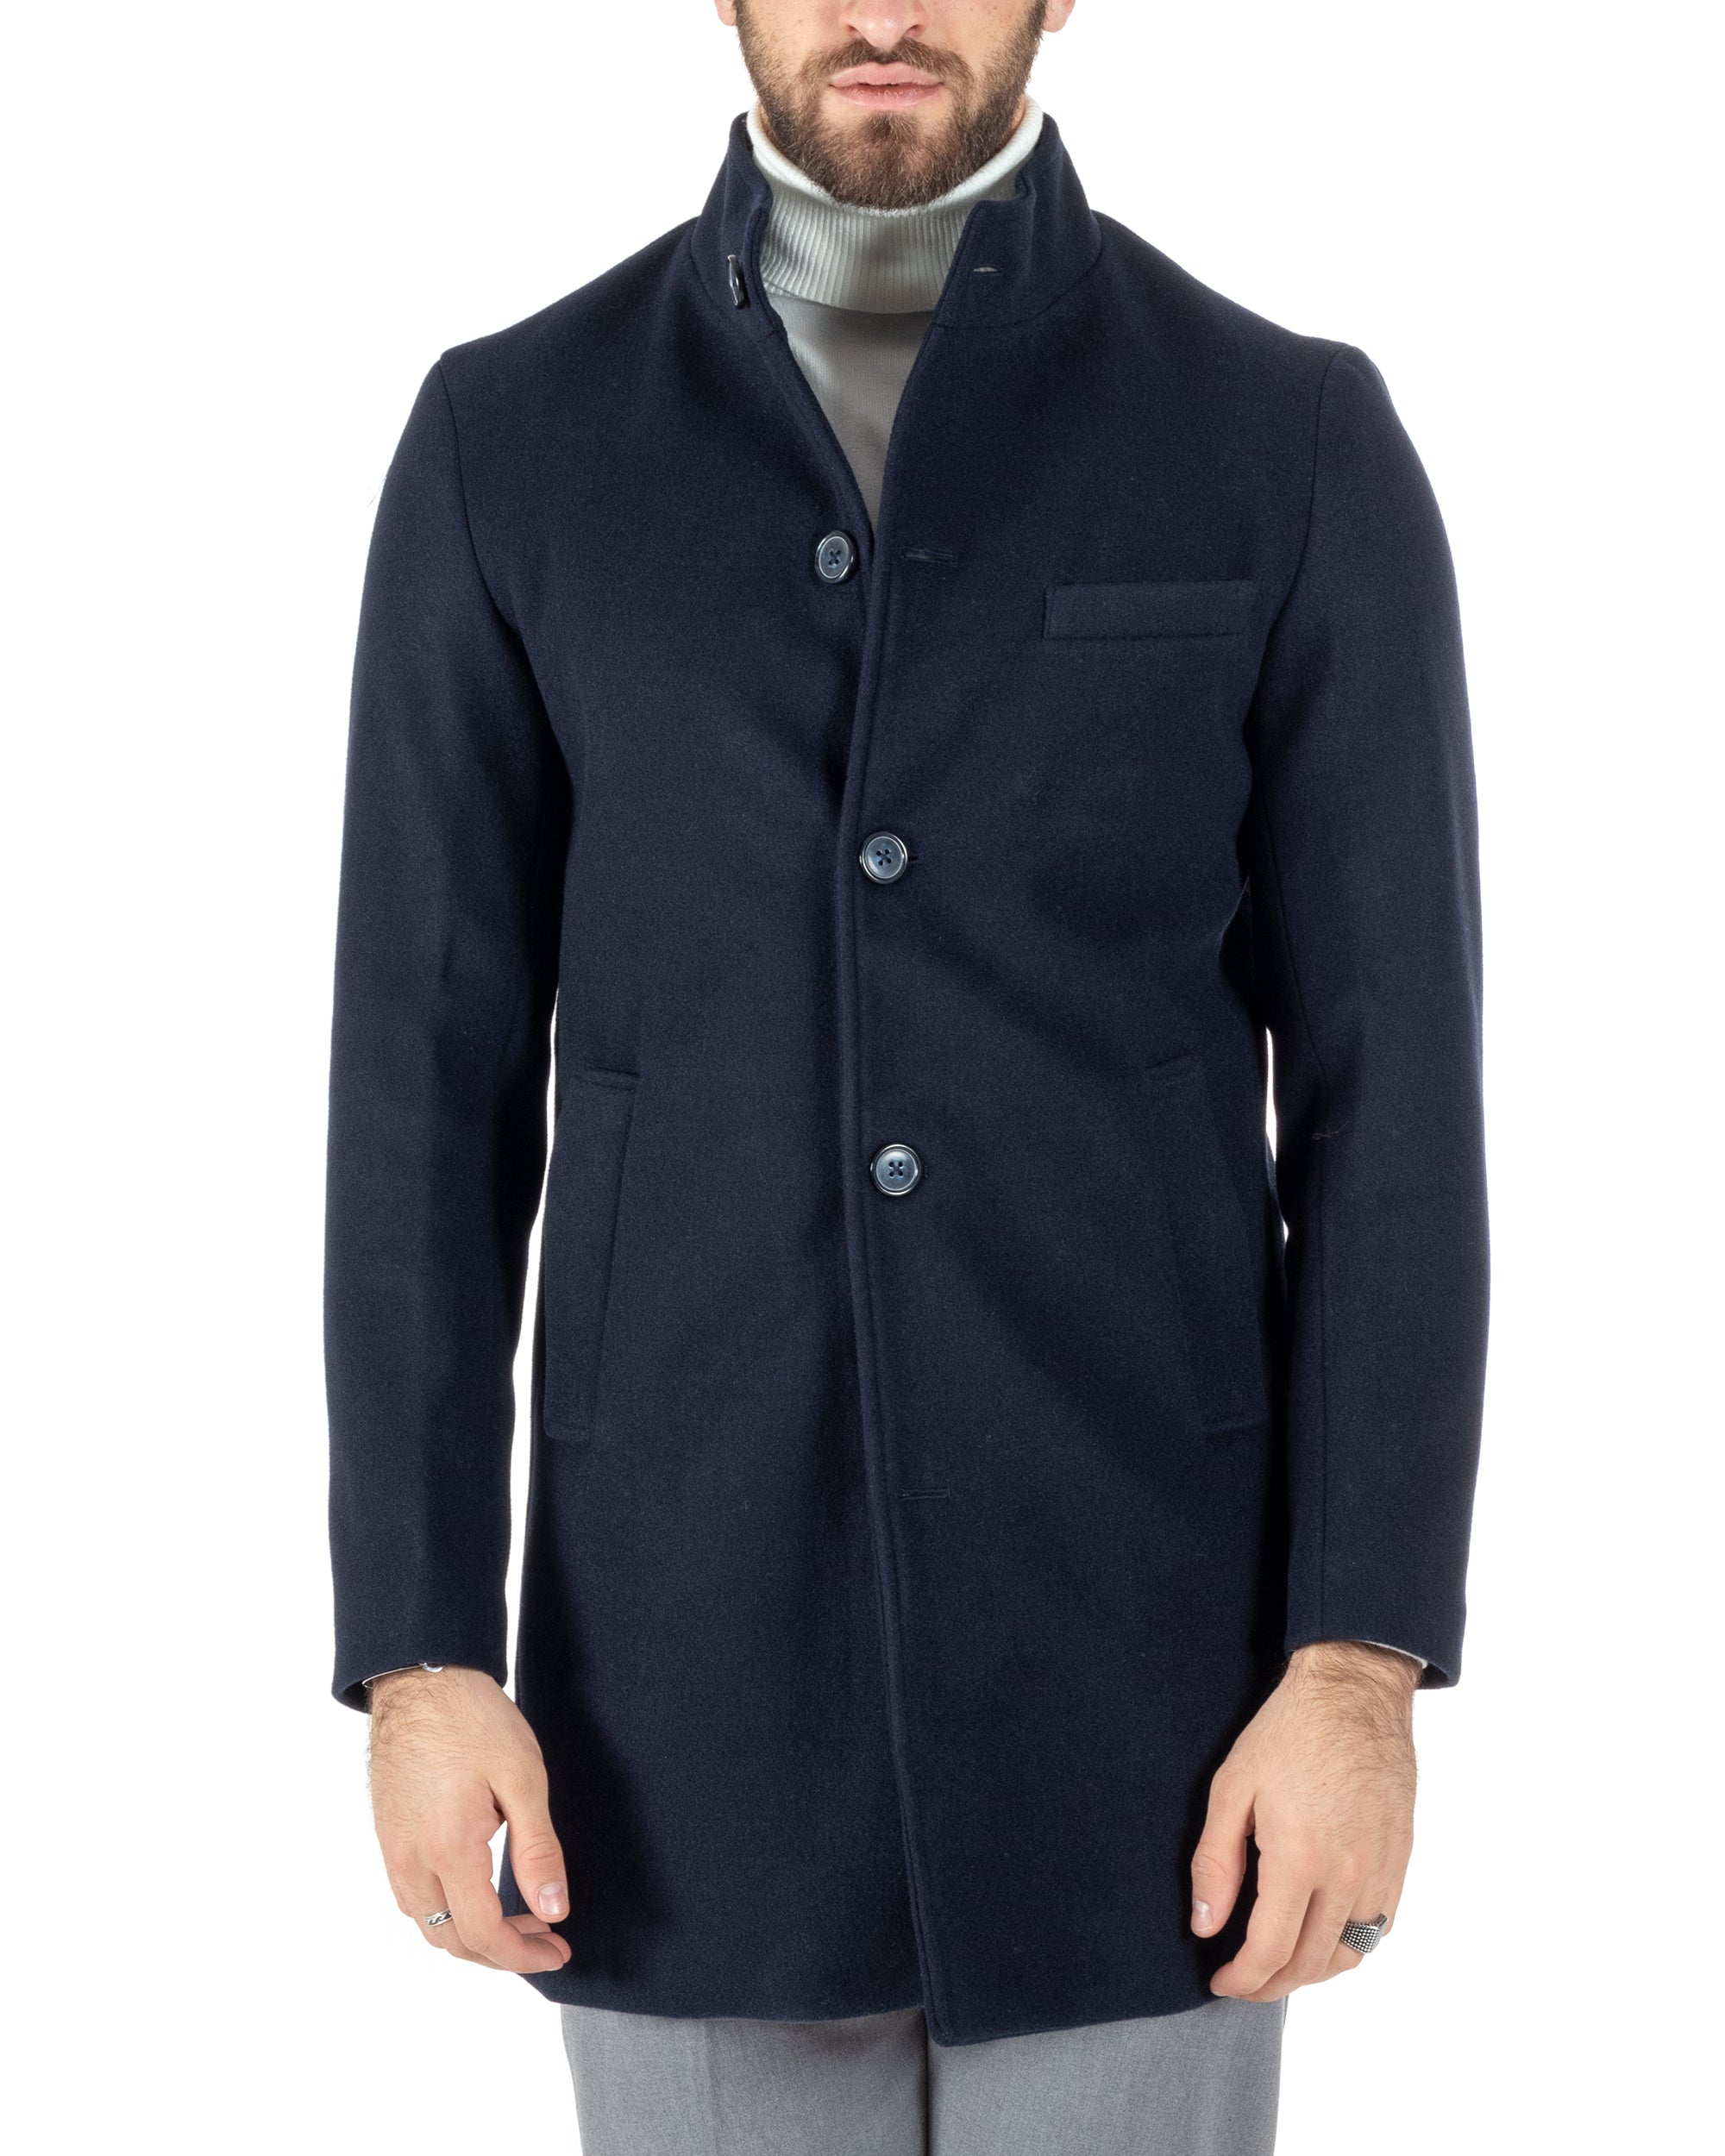 Cappotto Monopetto Uomo Giacca Collo Coreano Giaccone Lungo Blu Baronetto Elegante GIOSAL-CO1018A